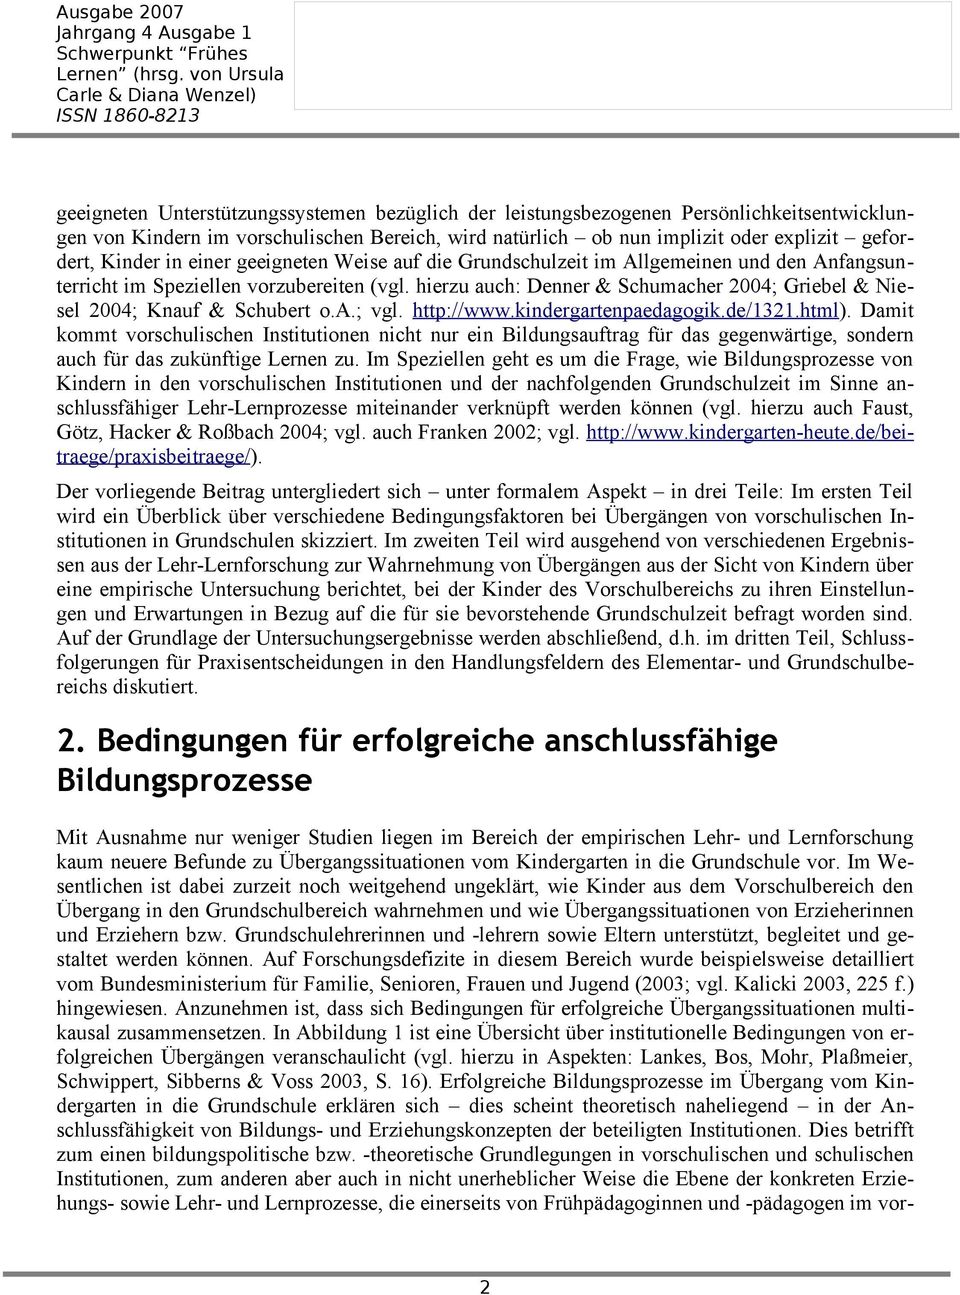 hierzu auch: Denner & Schumacher 2004; Griebel & Niesel 2004; Knauf & Schubert o.a.; vgl. http://www.kindergartenpaedagogik.de/1321.html).